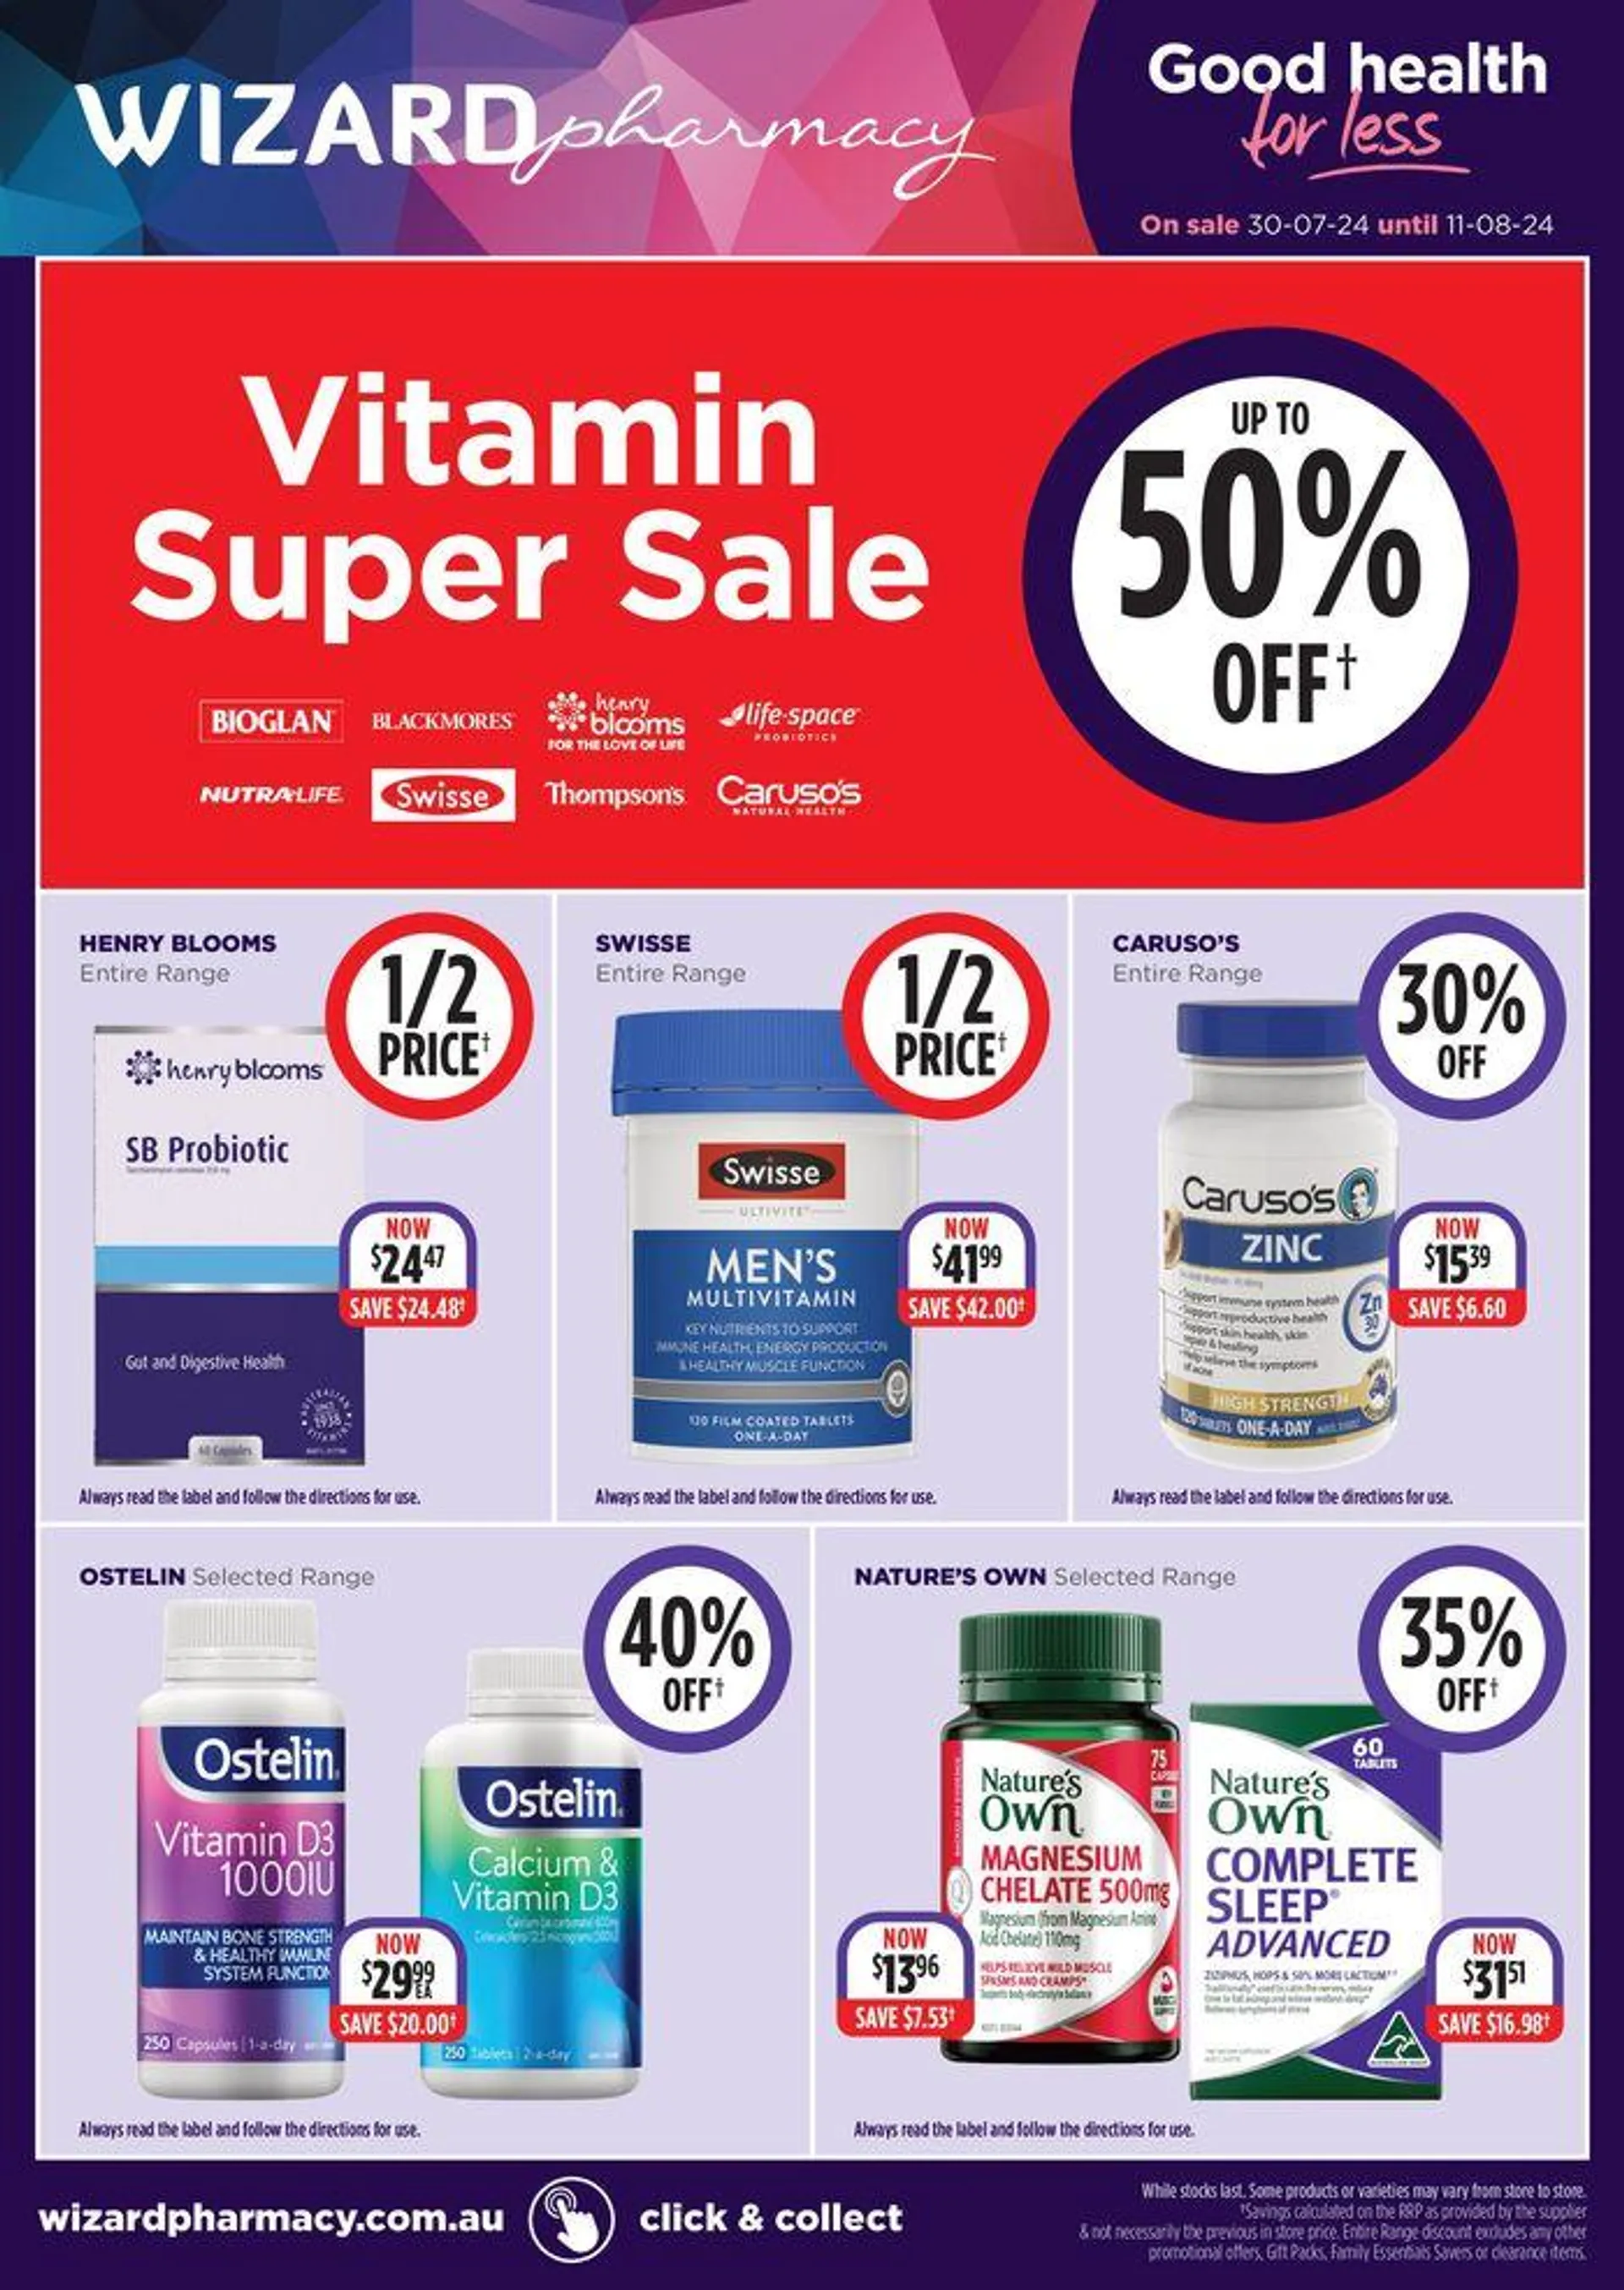 Vitamin Super Sale - 1